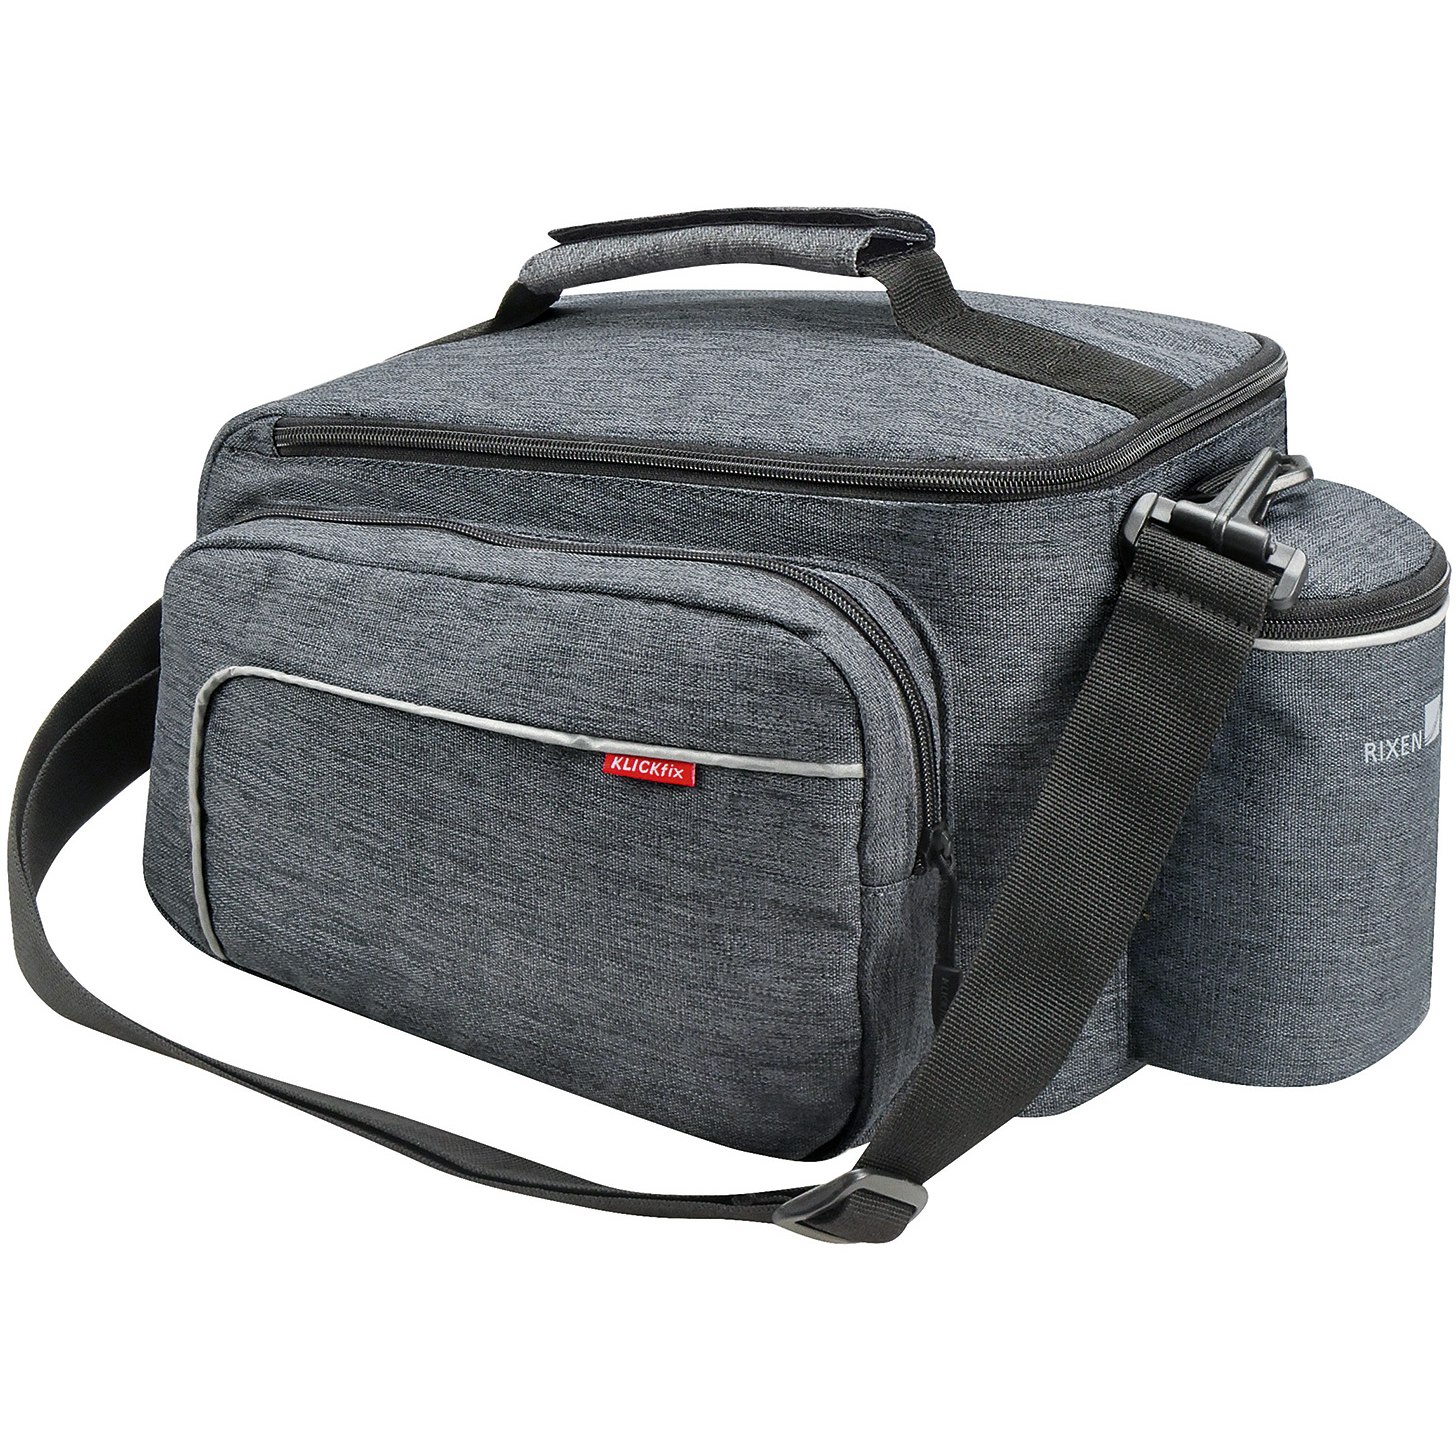 Produktbild von KLICKfix Rackpack Sport Uniklip 2 - Gepäckträgertasche - grau